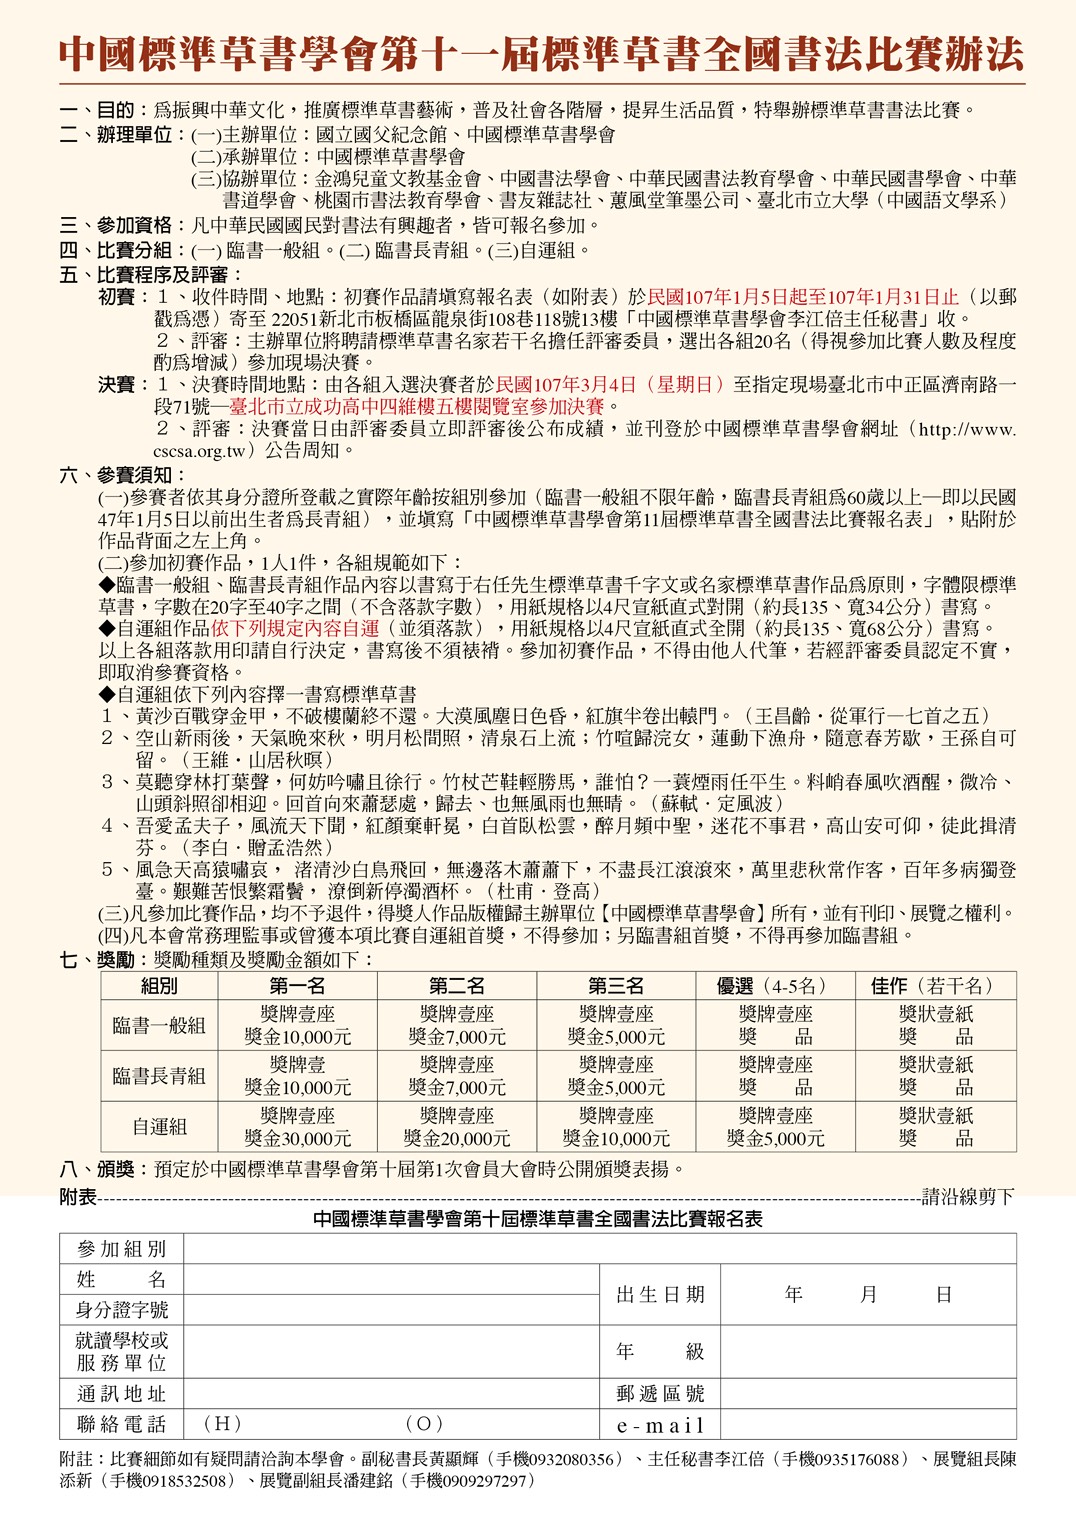 中國標準草書學會第十一屆標準草書全國書法比賽